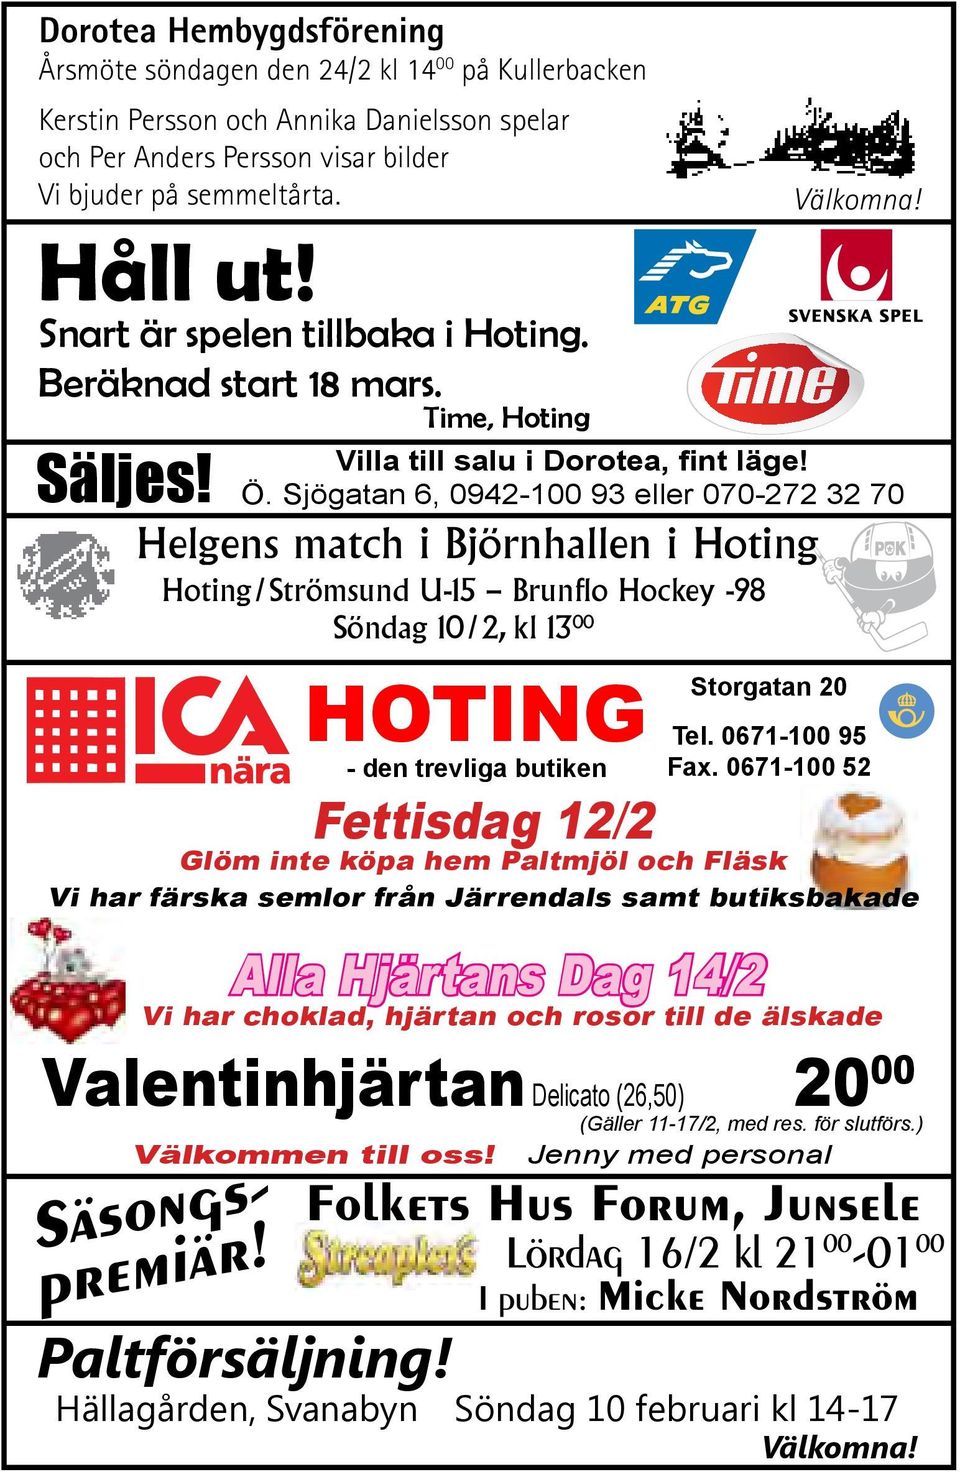 Helgens match i Björnhallen i Hoting Hoting/Strömsund U-15 Brunflo Hockey -98 Söndag 10/2, kl 13 00 Hoting - den trevliga butiken Storgatan 20 Tel. 0671-100 95 Fax.